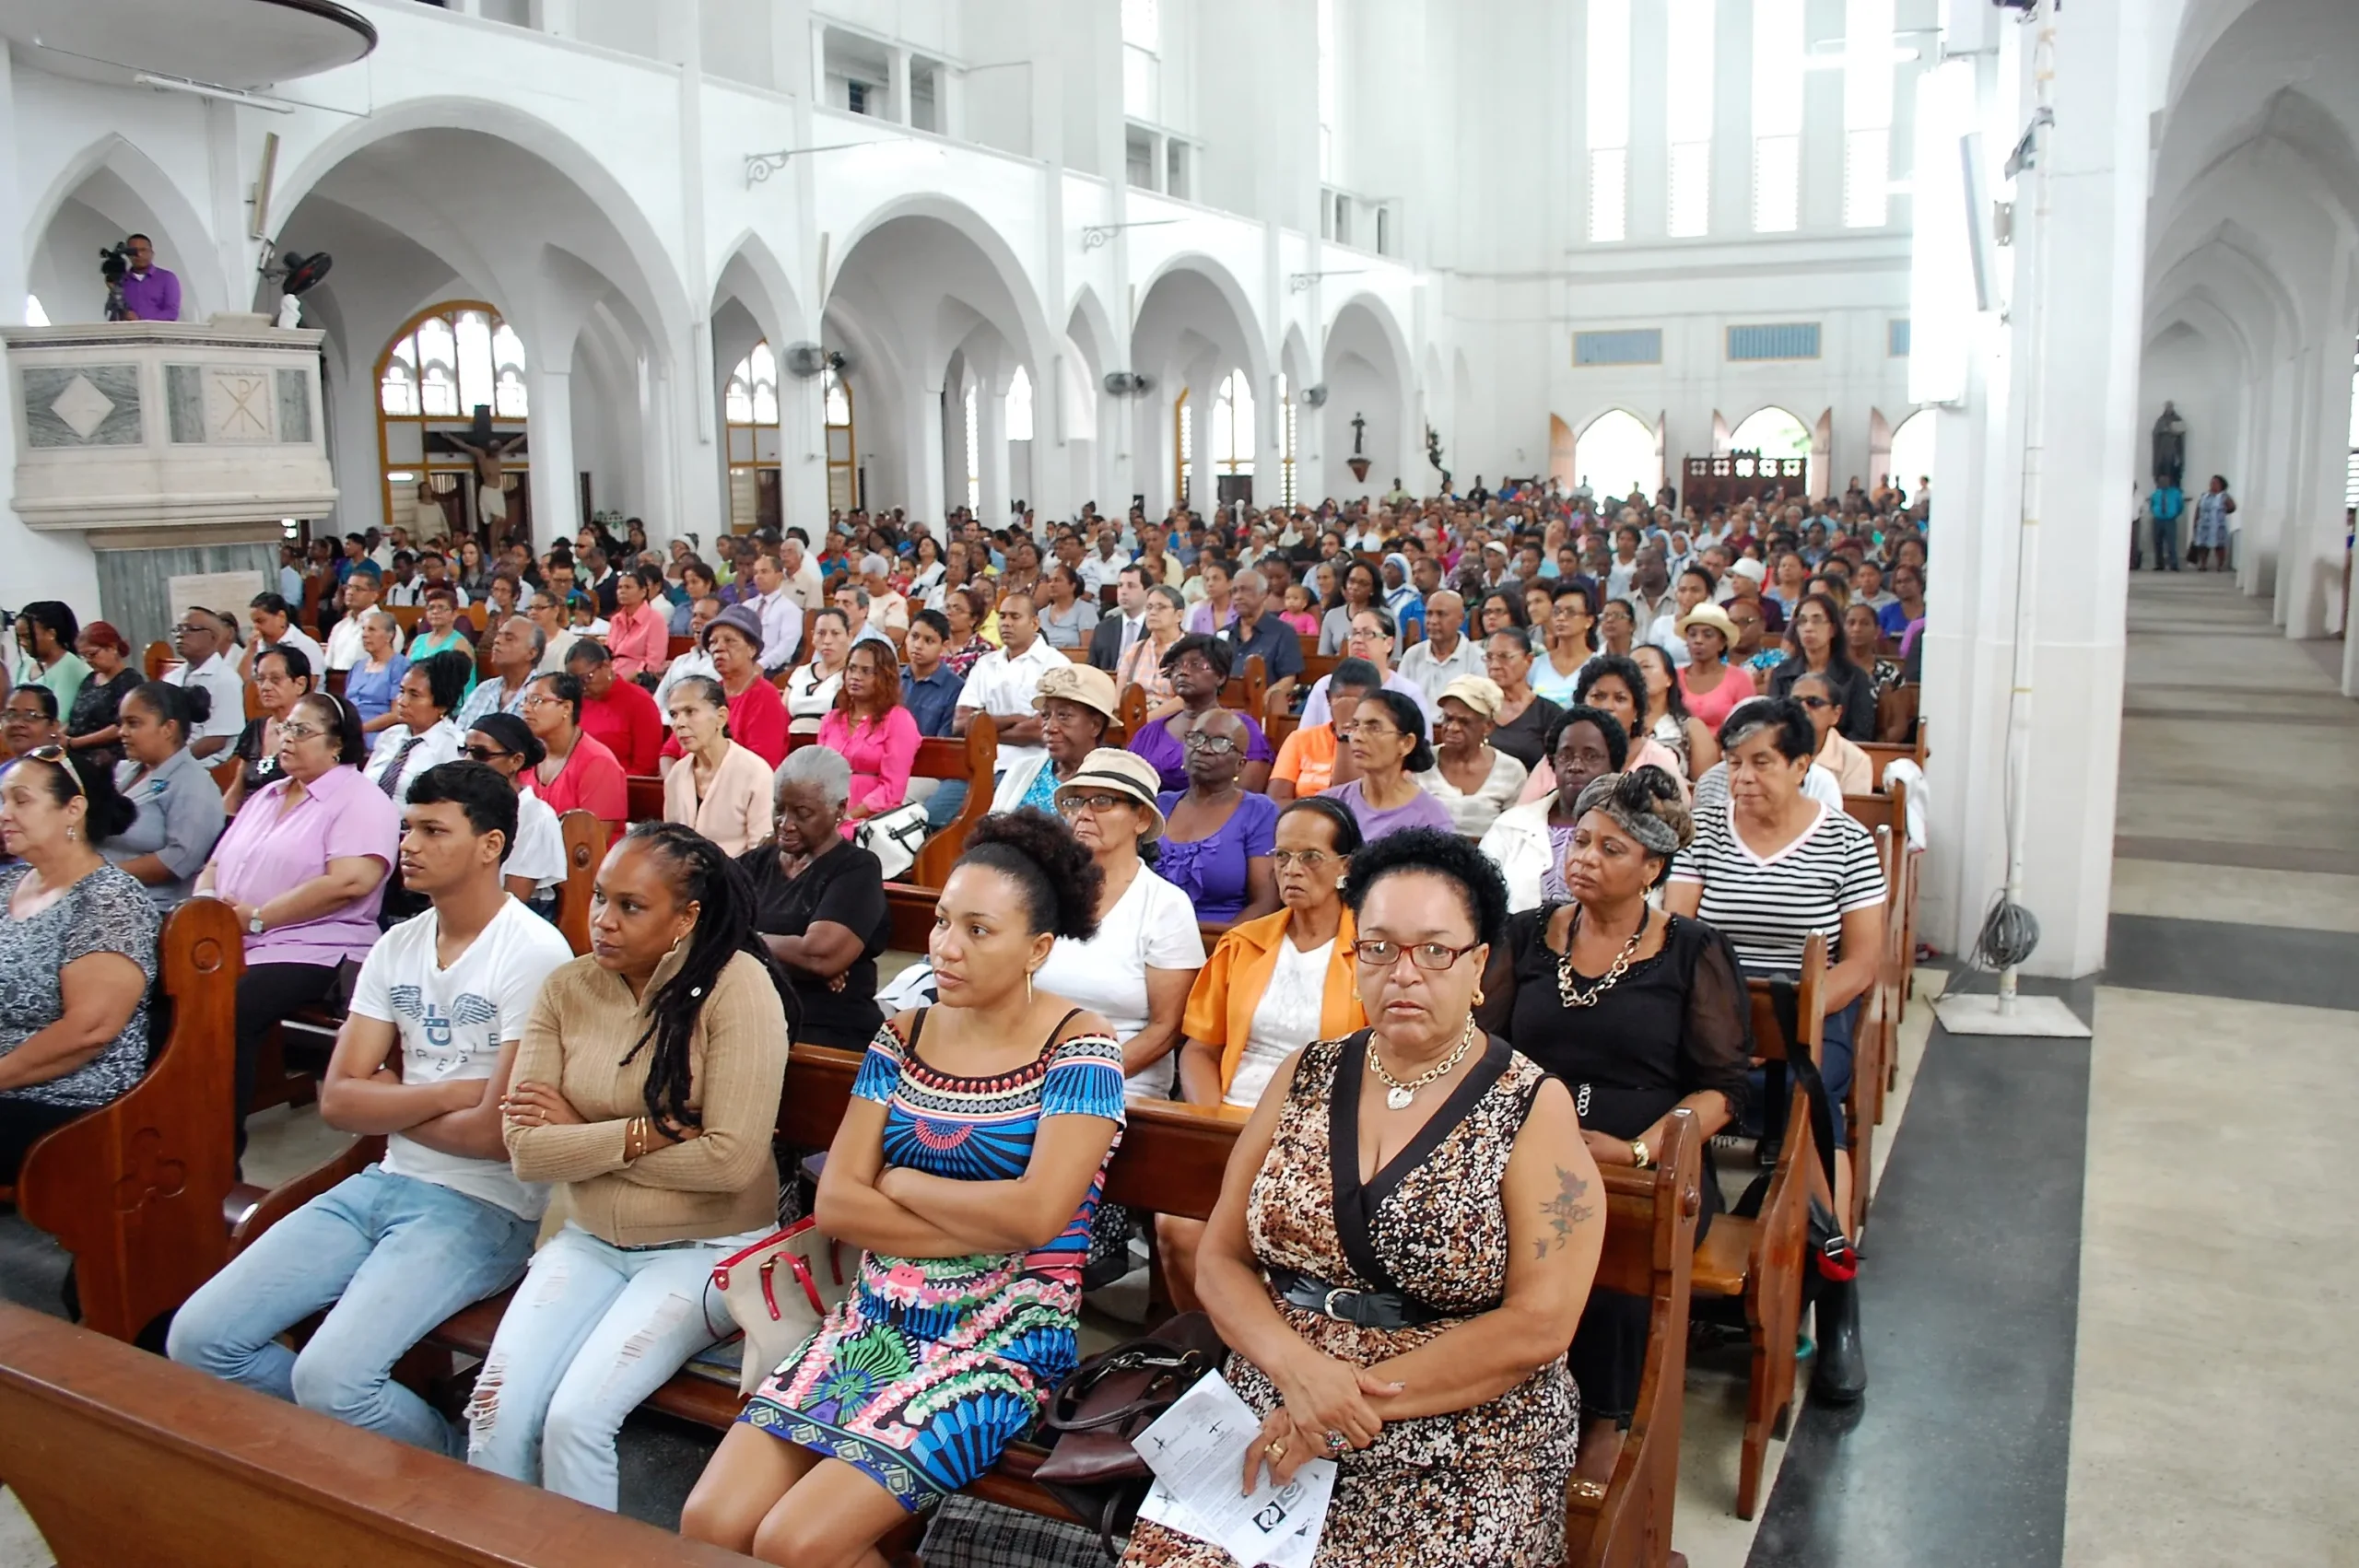 Christianity in Guyana